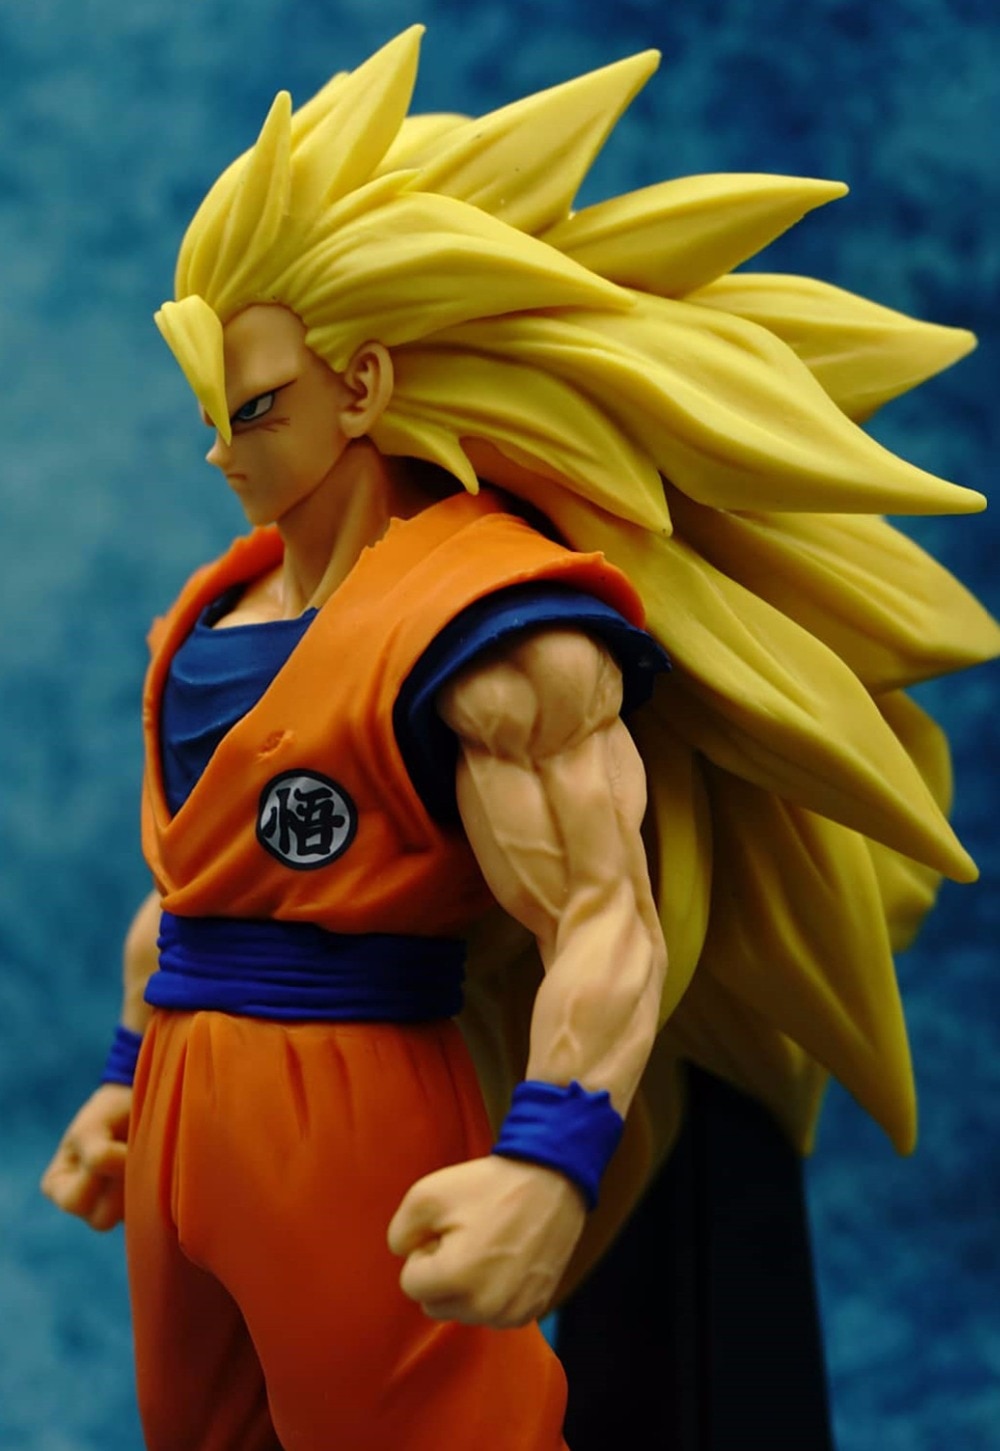 Goku Super Saiyan 3 Figure 18cm - Dragon Ball Z Figures